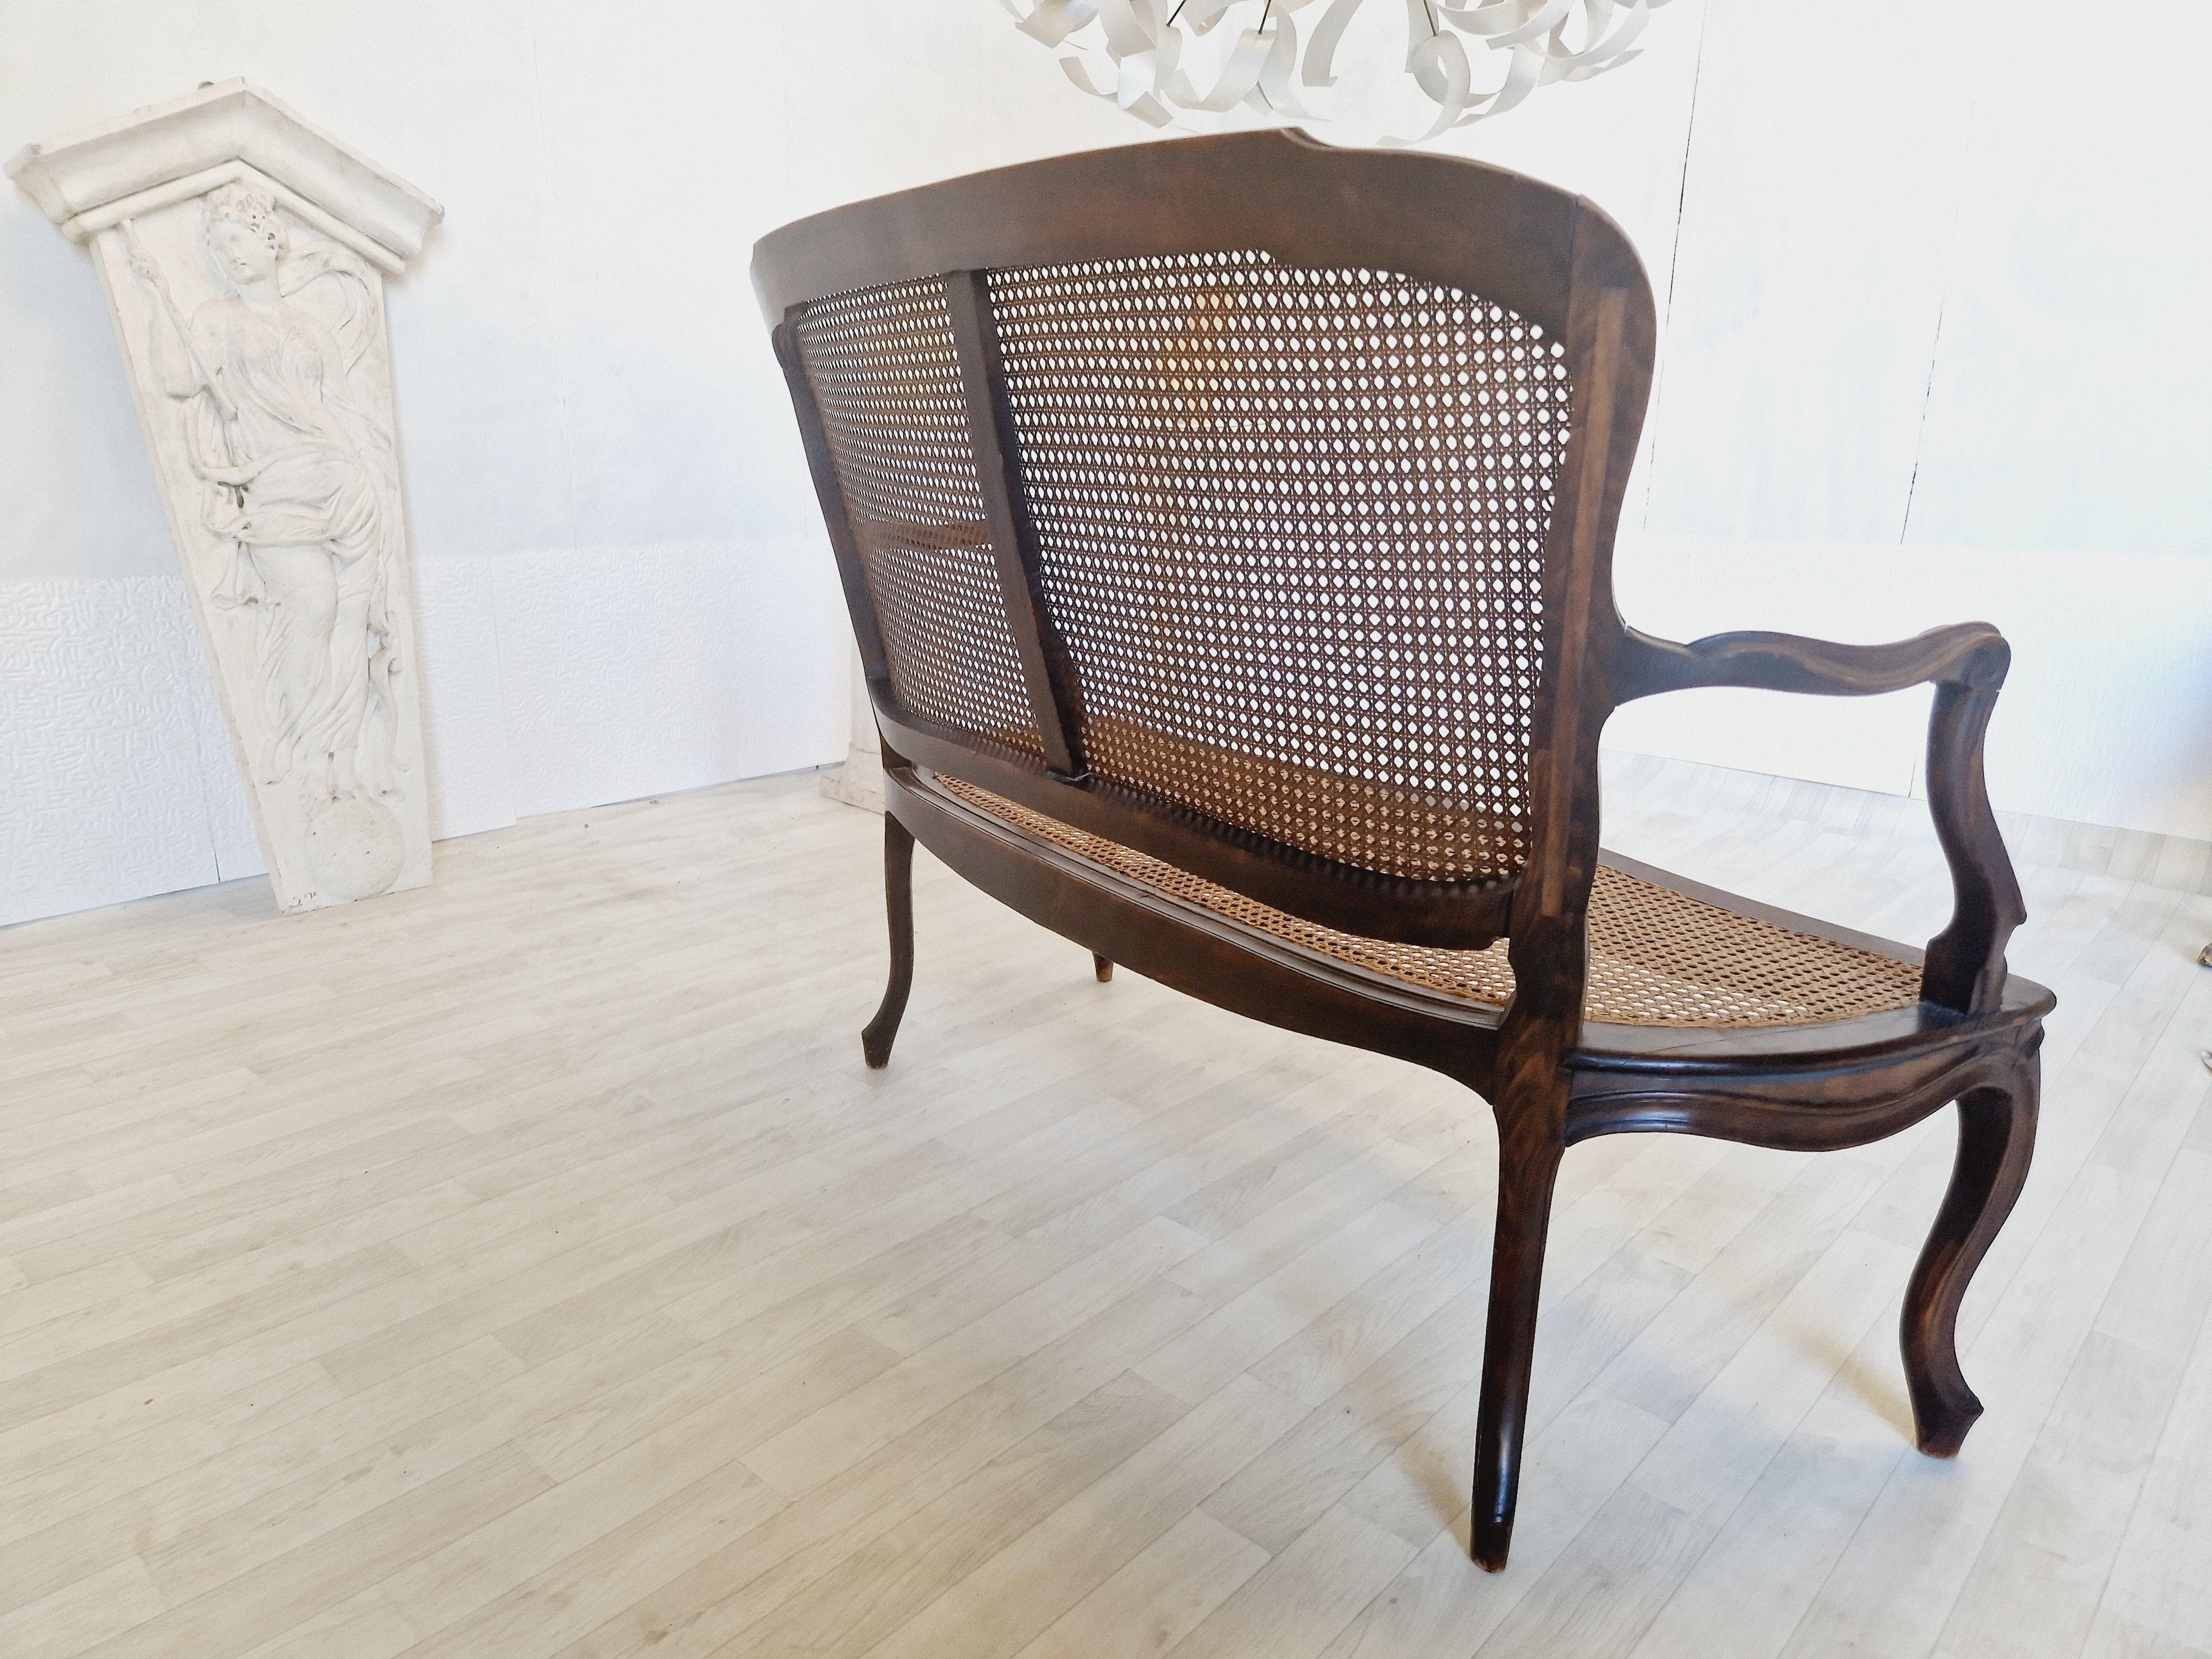 Lassen Sie sich vom Charme des 19. Jahrhunderts verzaubern mit diesem eleganten französischen Rocaille-Salon-Set. Dieses aus hochwertigem Nussbaumholz gefertigte Set mit Sitz und Rückenlehne aus Rohrgeflecht im Louis XV-Stil besteht aus einem Sofa